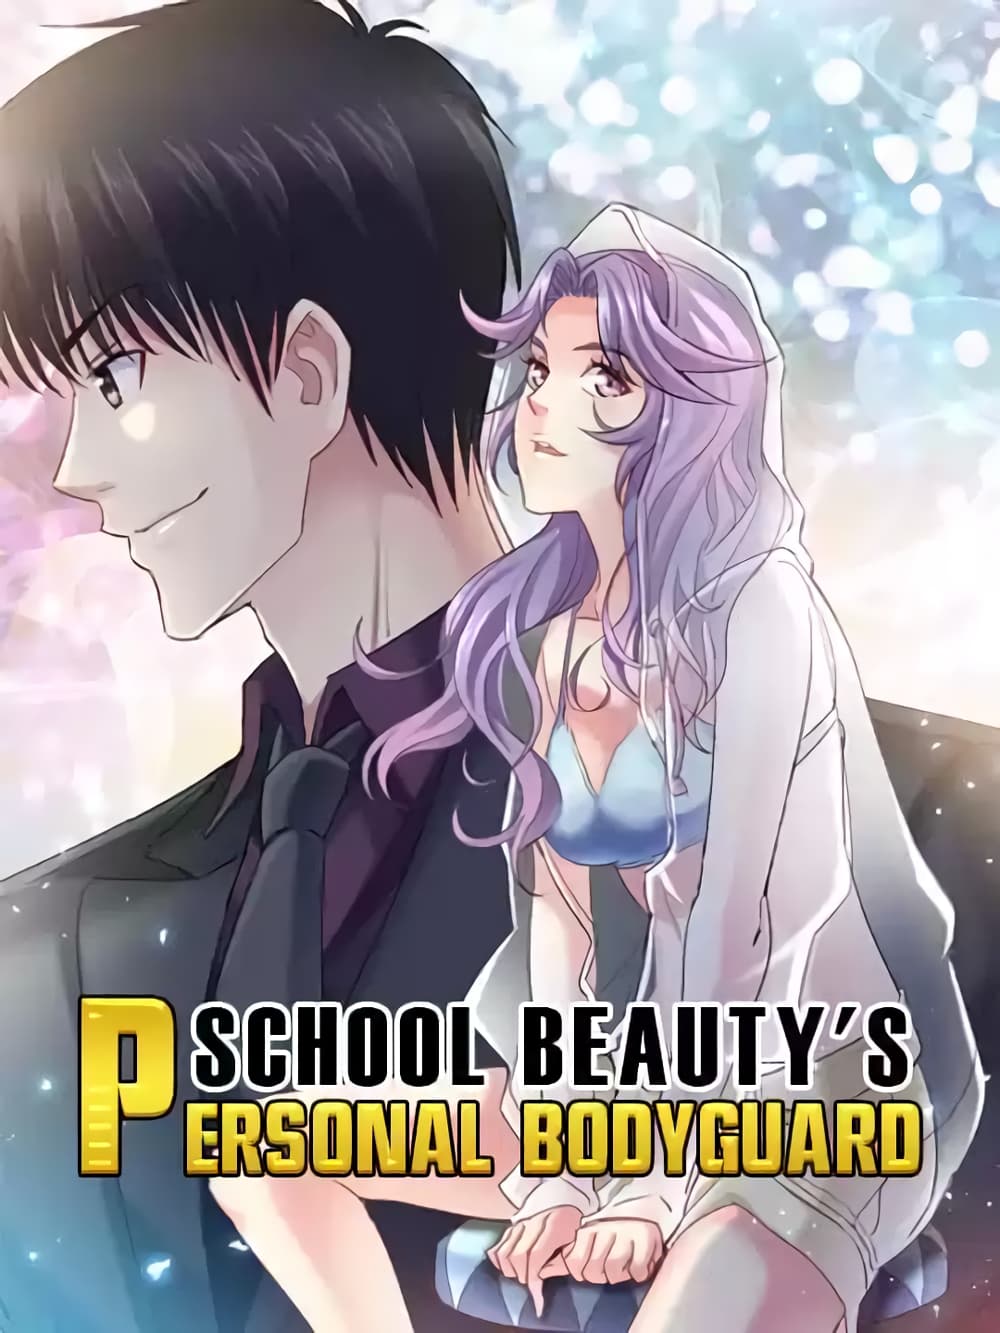 School Beauty's Bodyguard 295 (1)